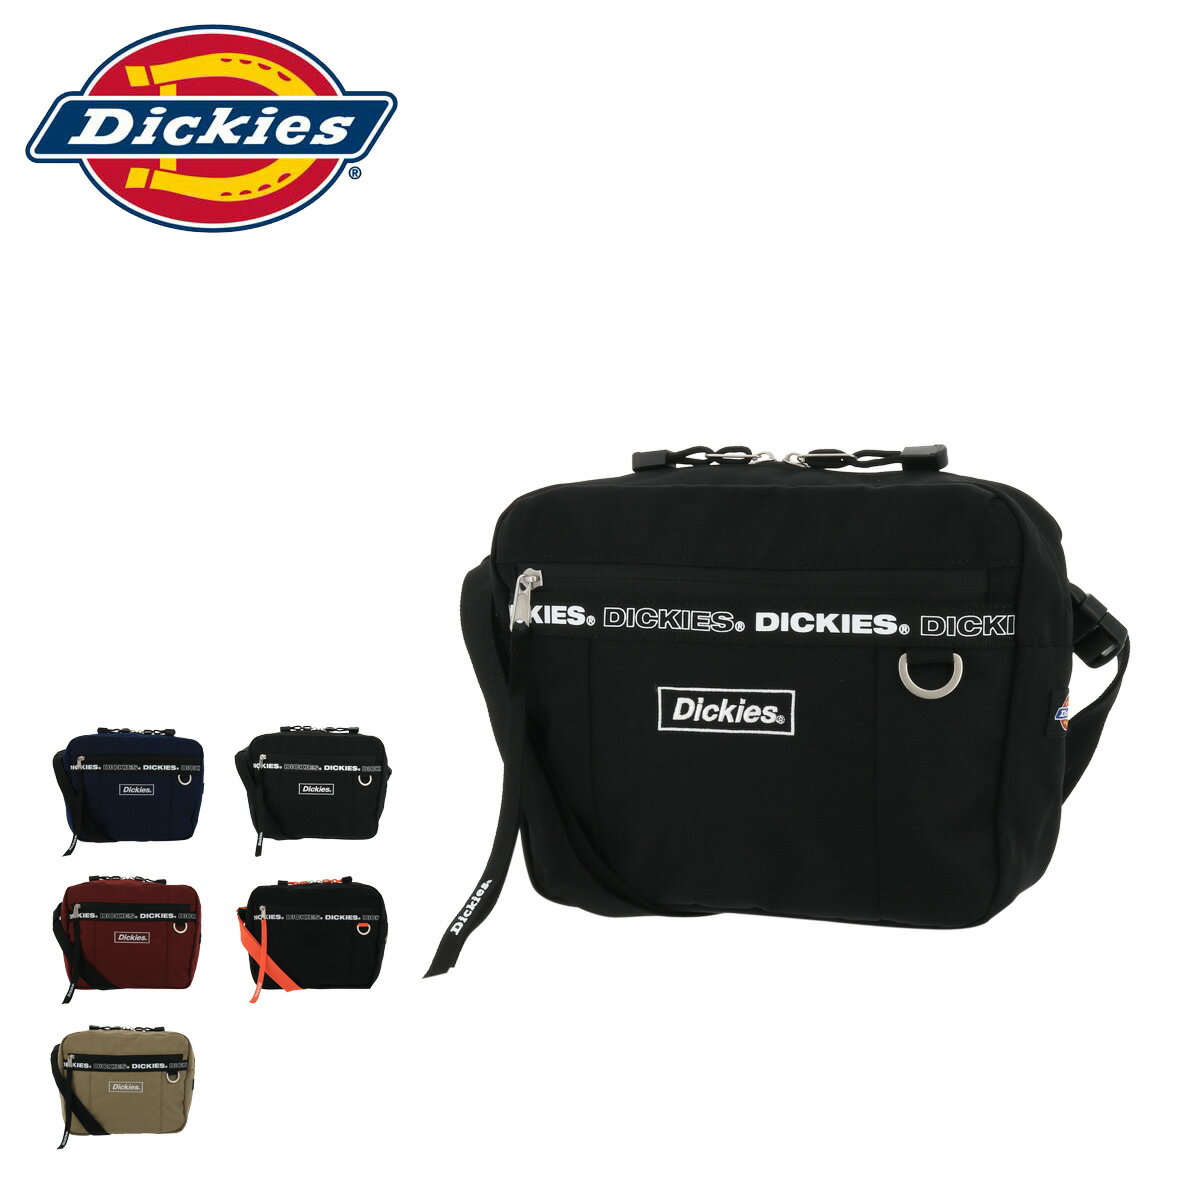 ディッキーズ ショルダーバッグ 横型 フレーム ロゴ メンズ レディース 14504300 DICKIES | 斜めがけ ペット お散歩バッグ ワンマイルバッグ